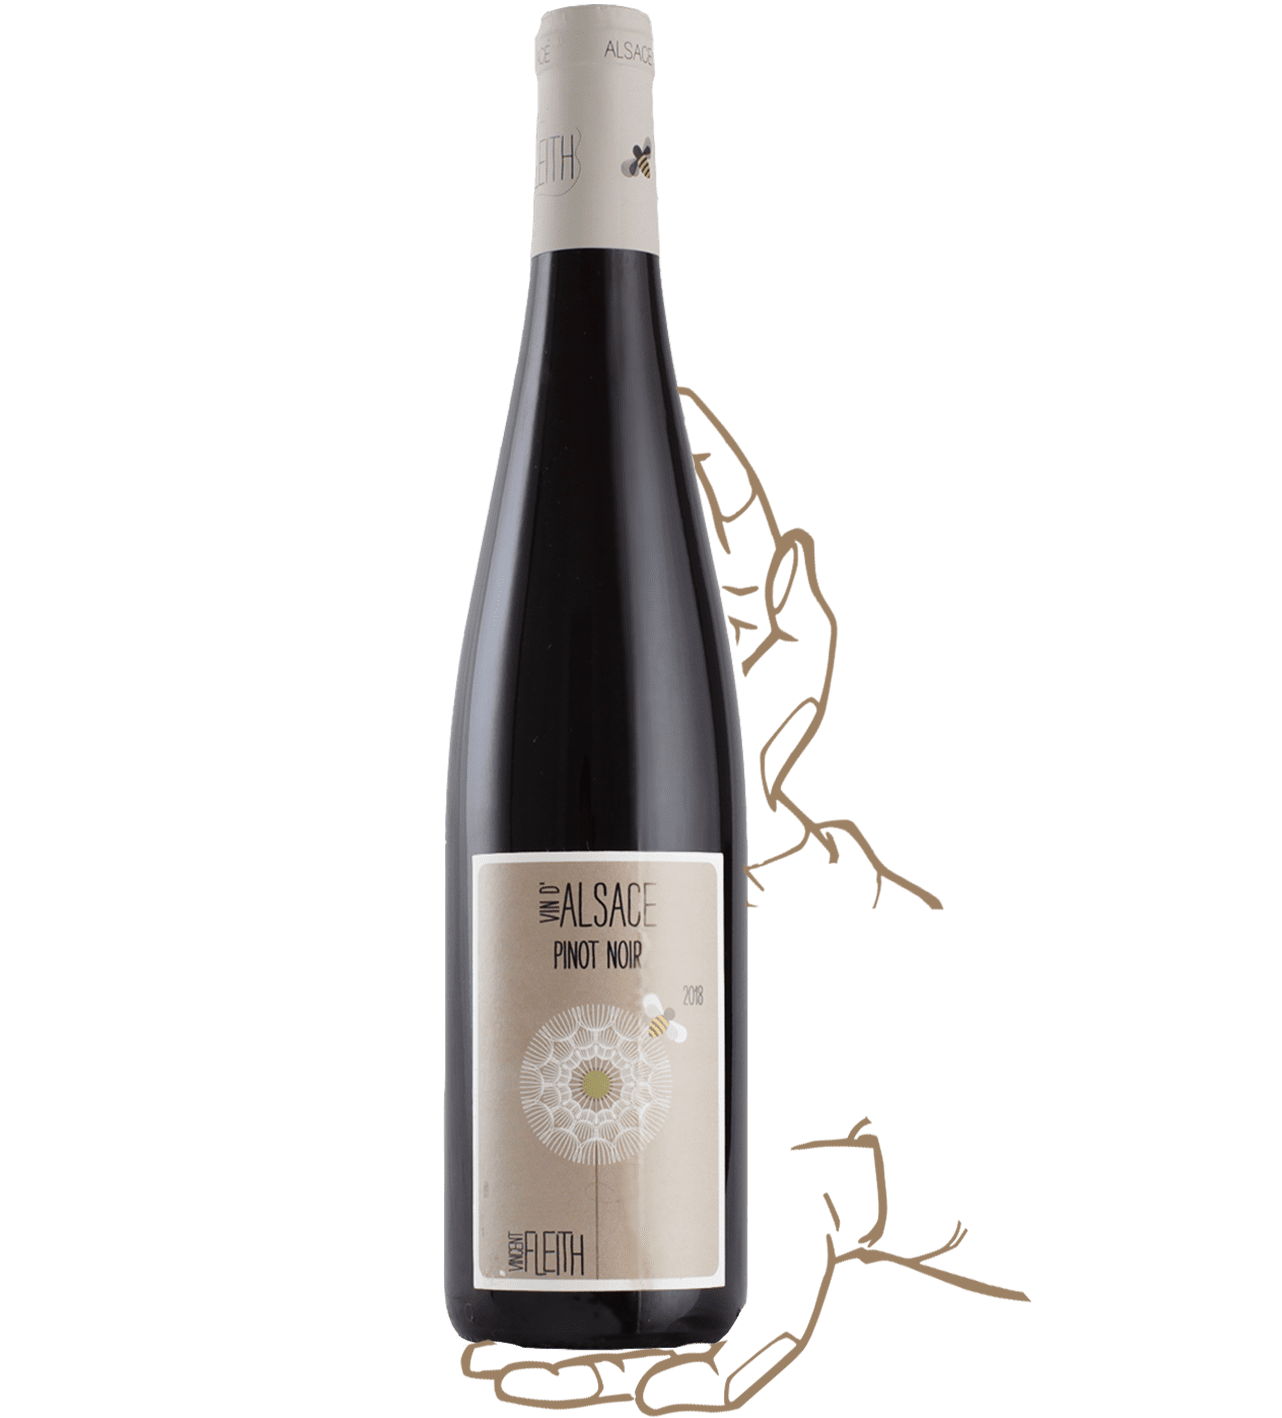 Pinot Noir de Vincent Fleith, un vin rouge biodynamique d'Alsace